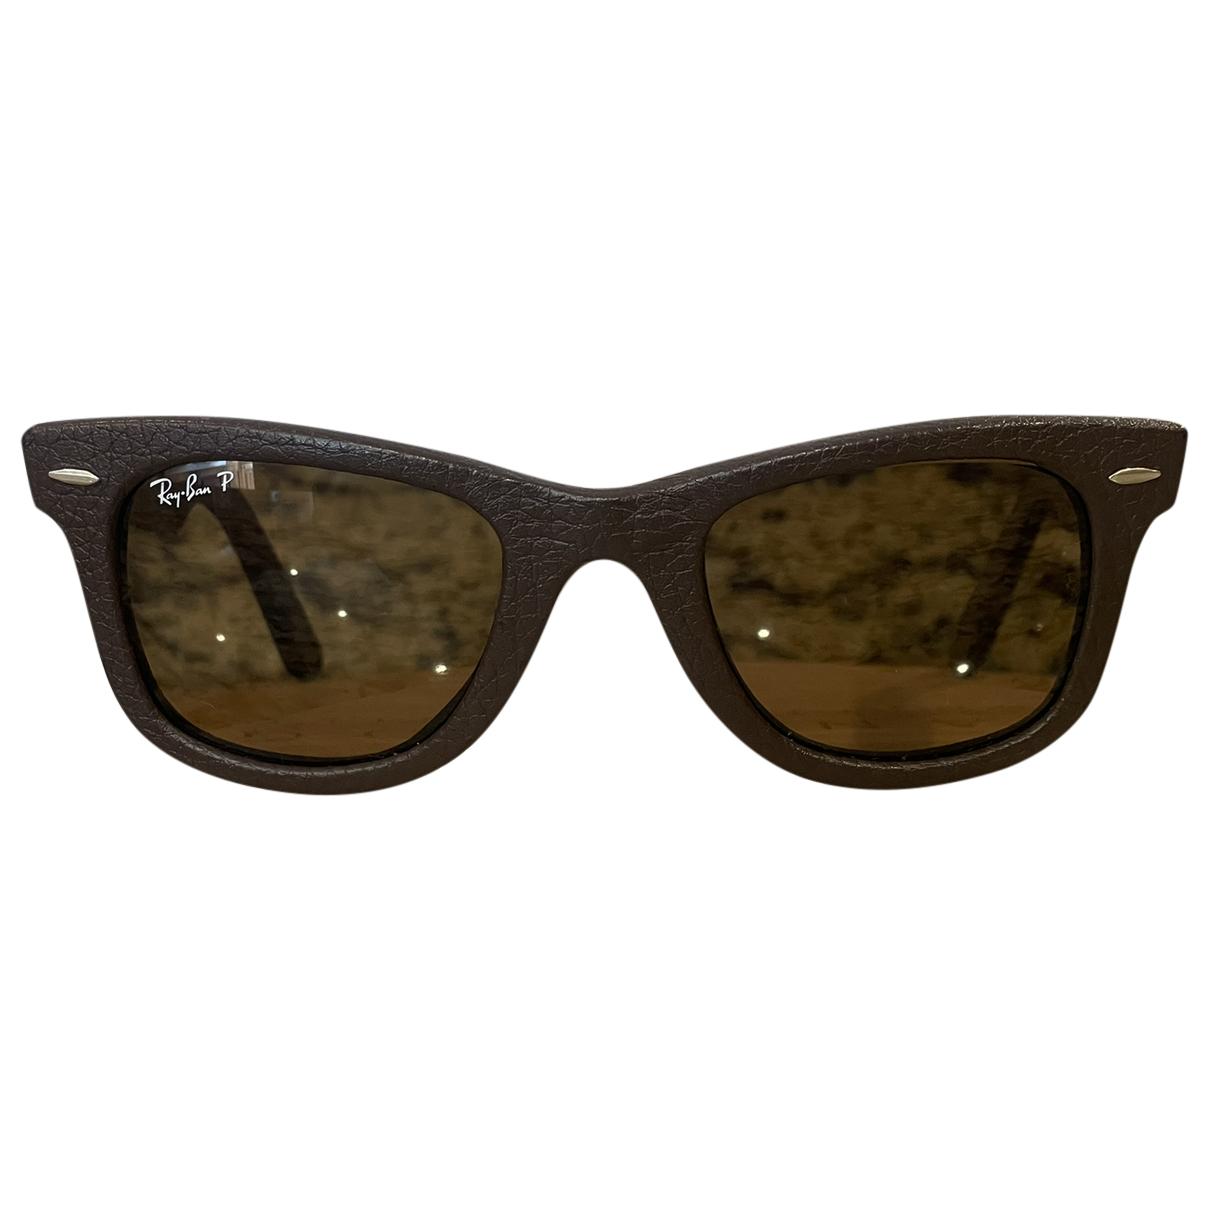 Original Wayfarer sunglasses